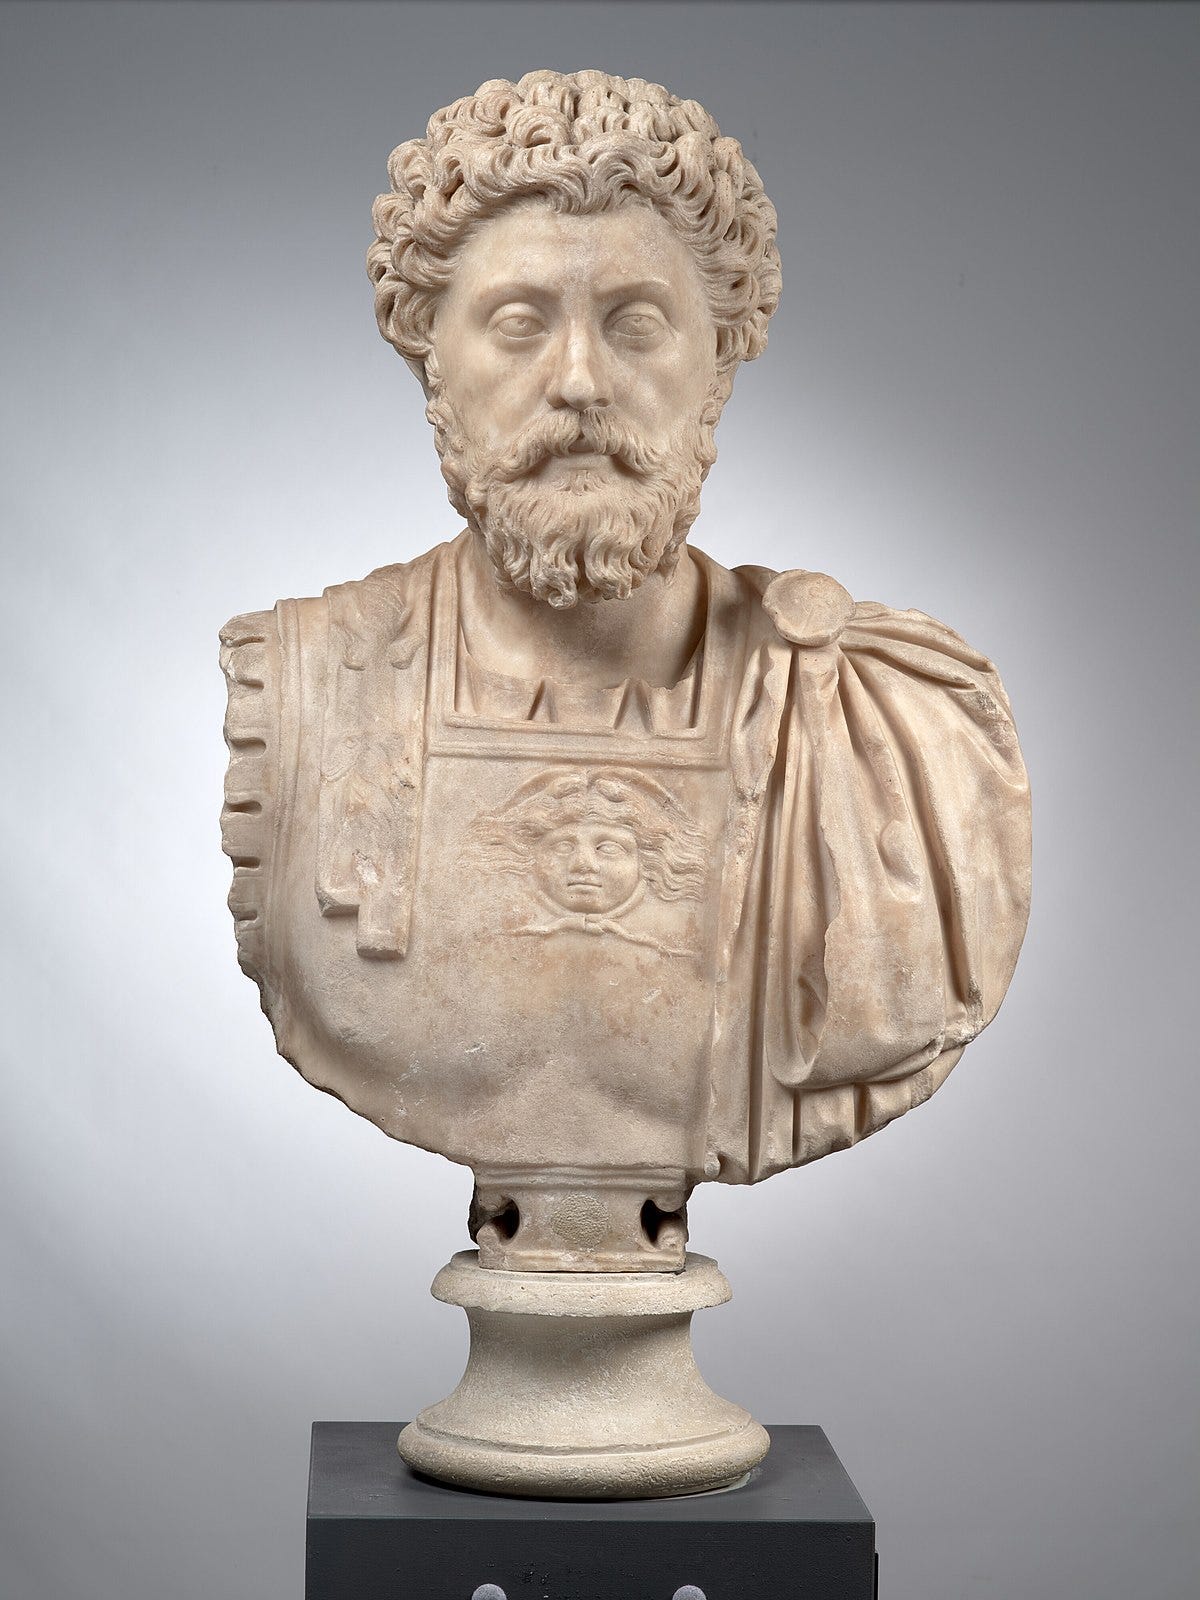 Marcus Aurelius - Wikipedia